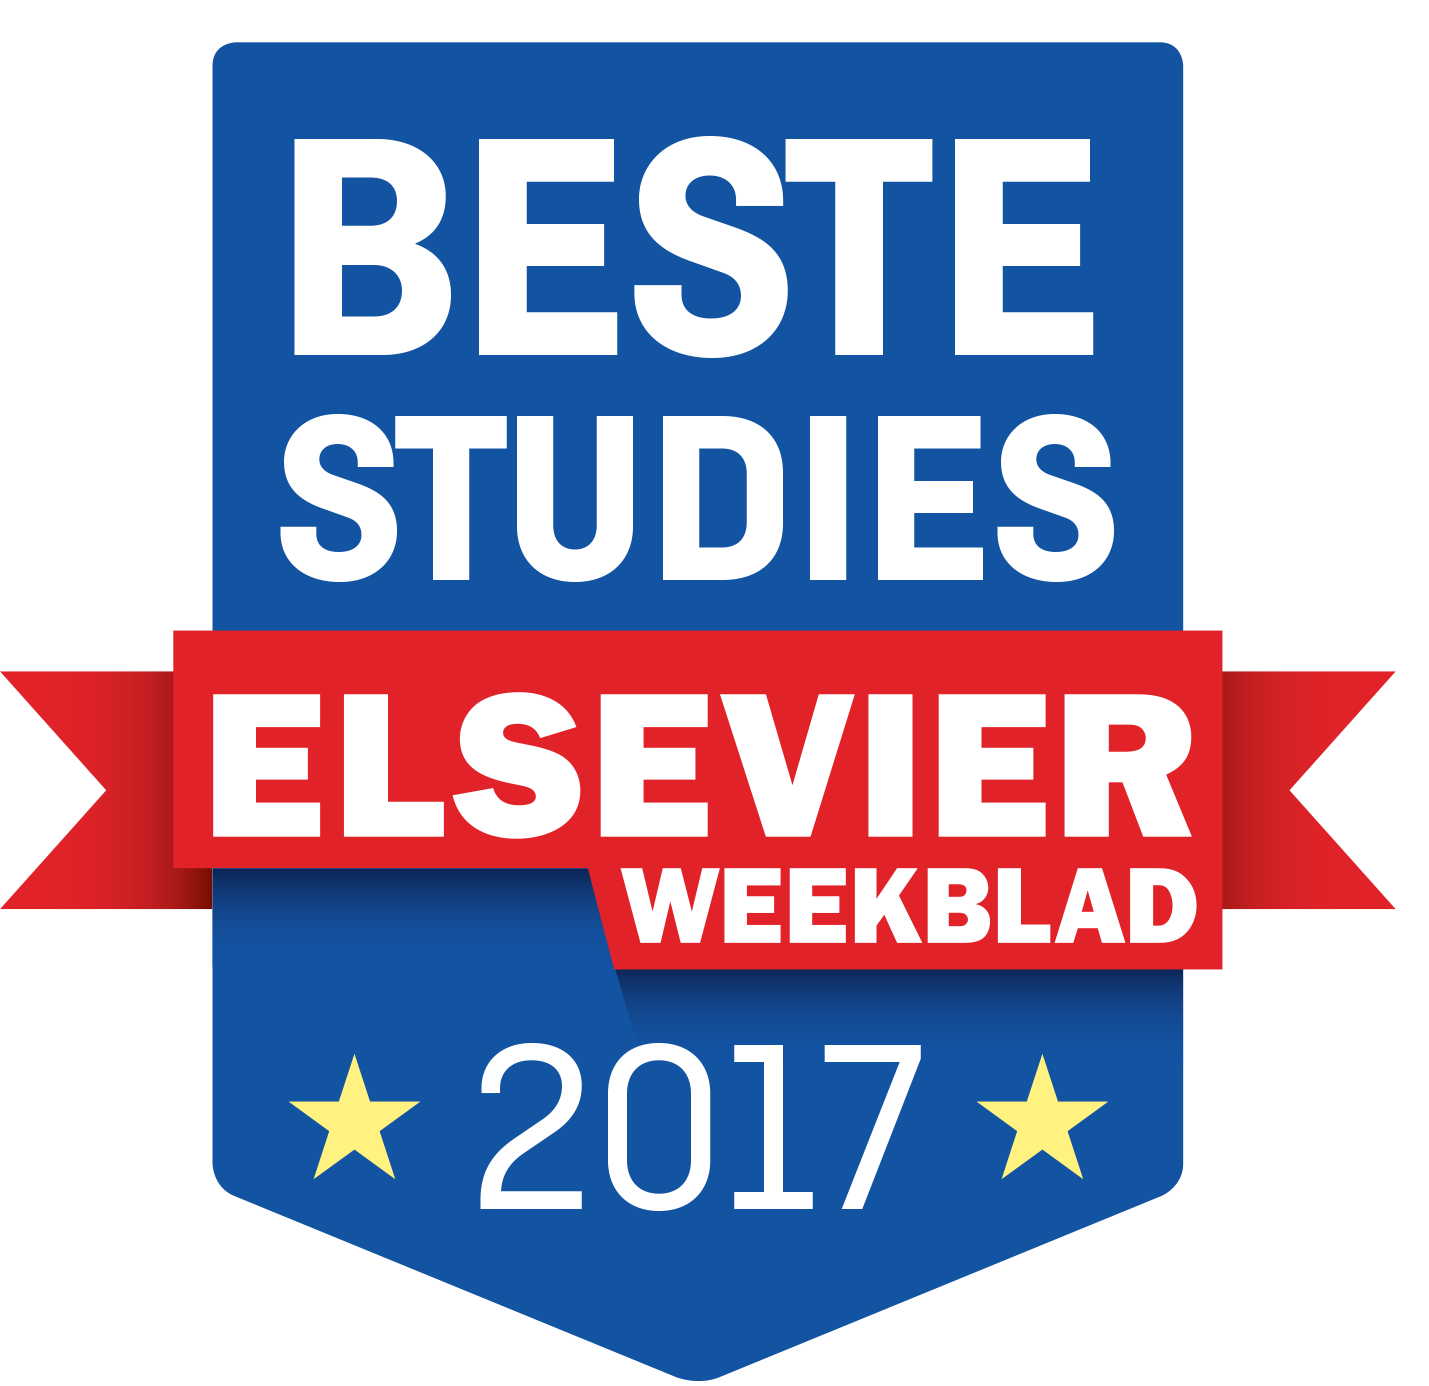 Beste studies badge 2017 Elsevier